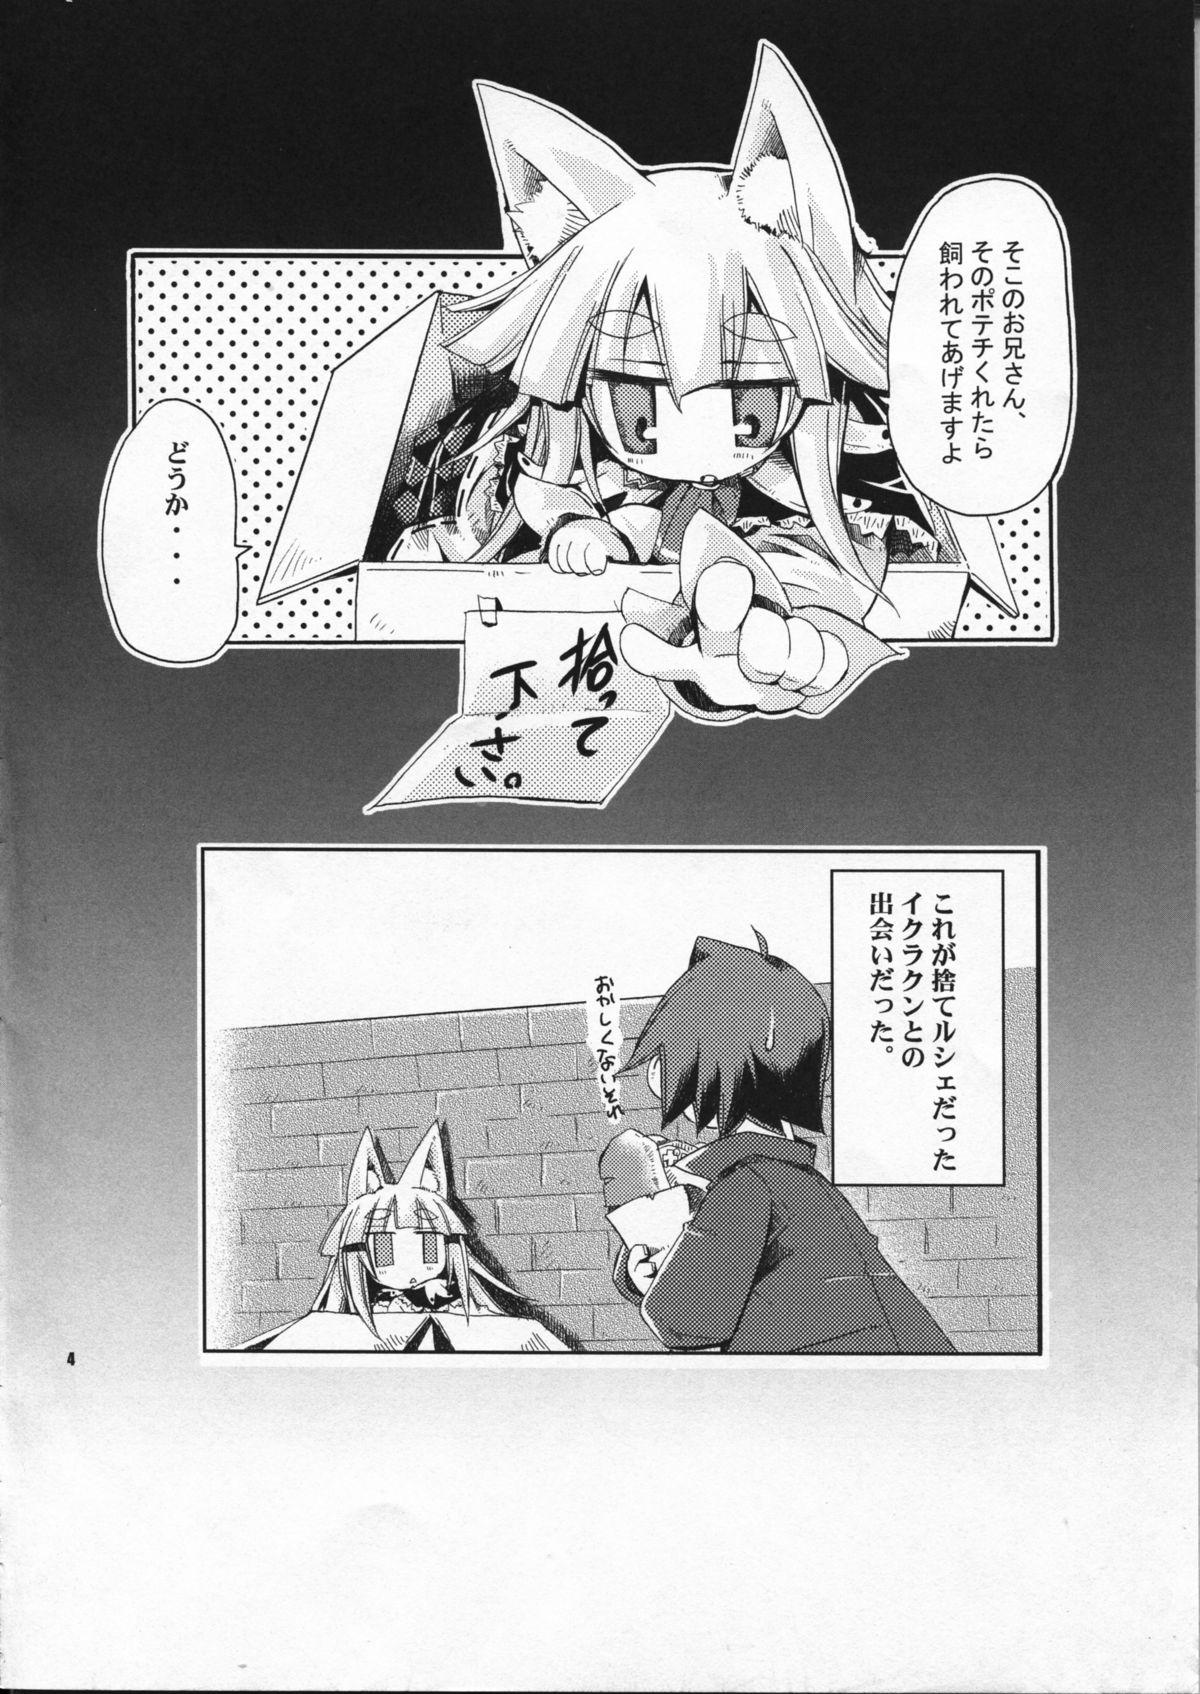 Fuck Porn Wagaya no Ikura no Kaikata - 7th dragon Stripping - Page 4